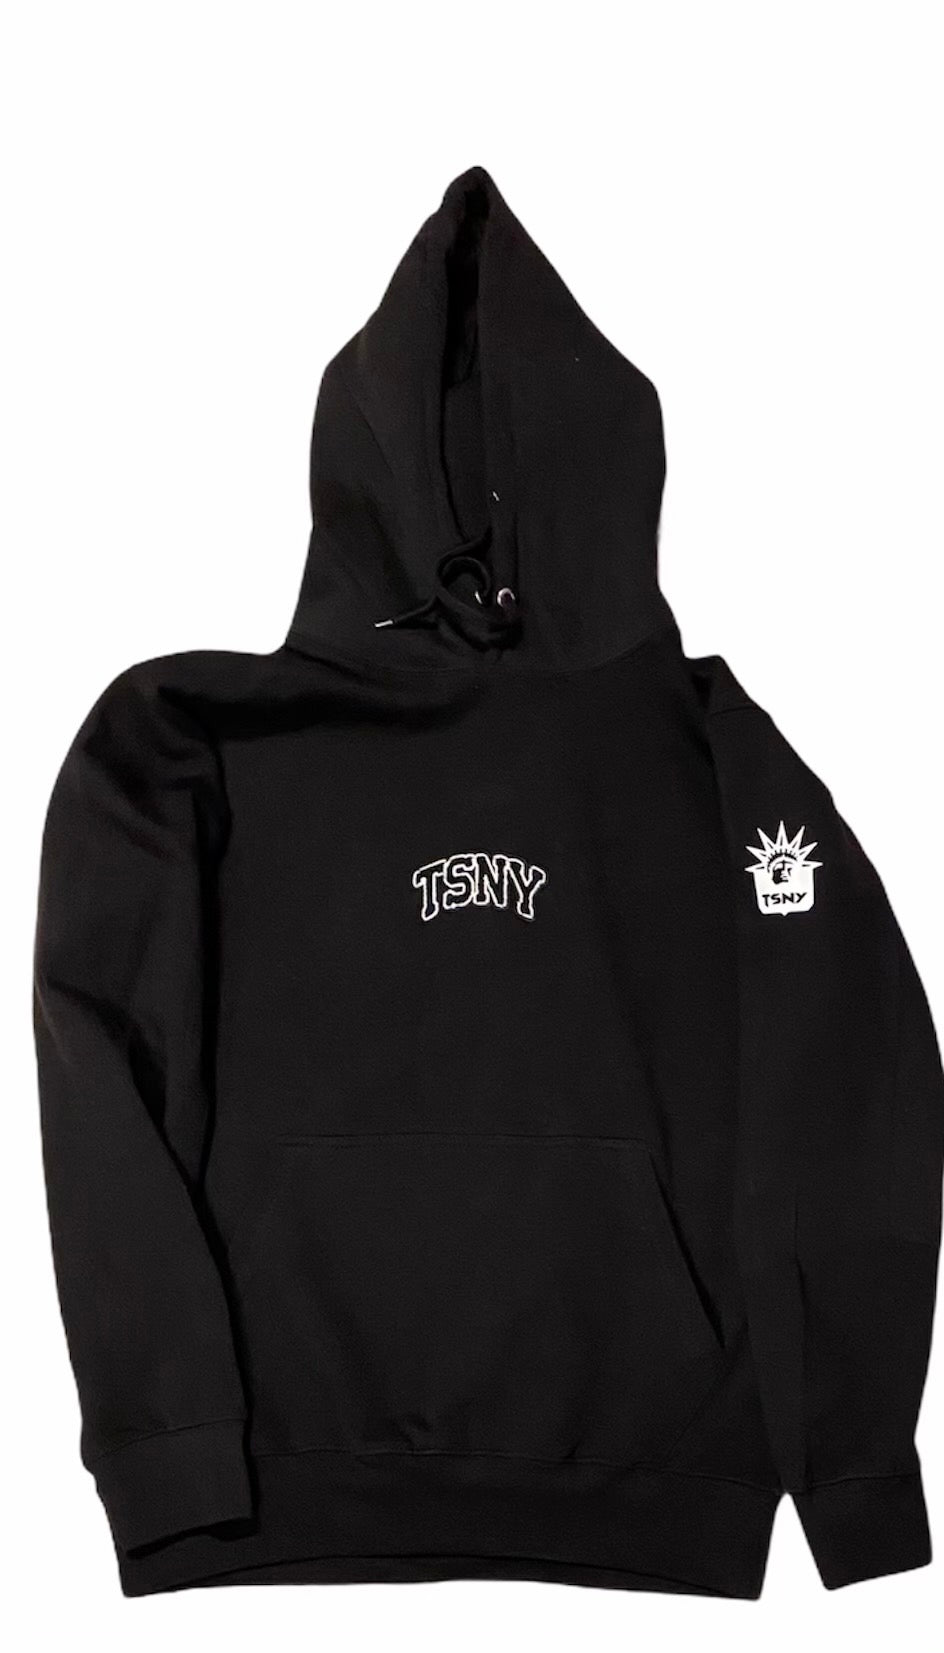 TSNY “Liberty” hoodie